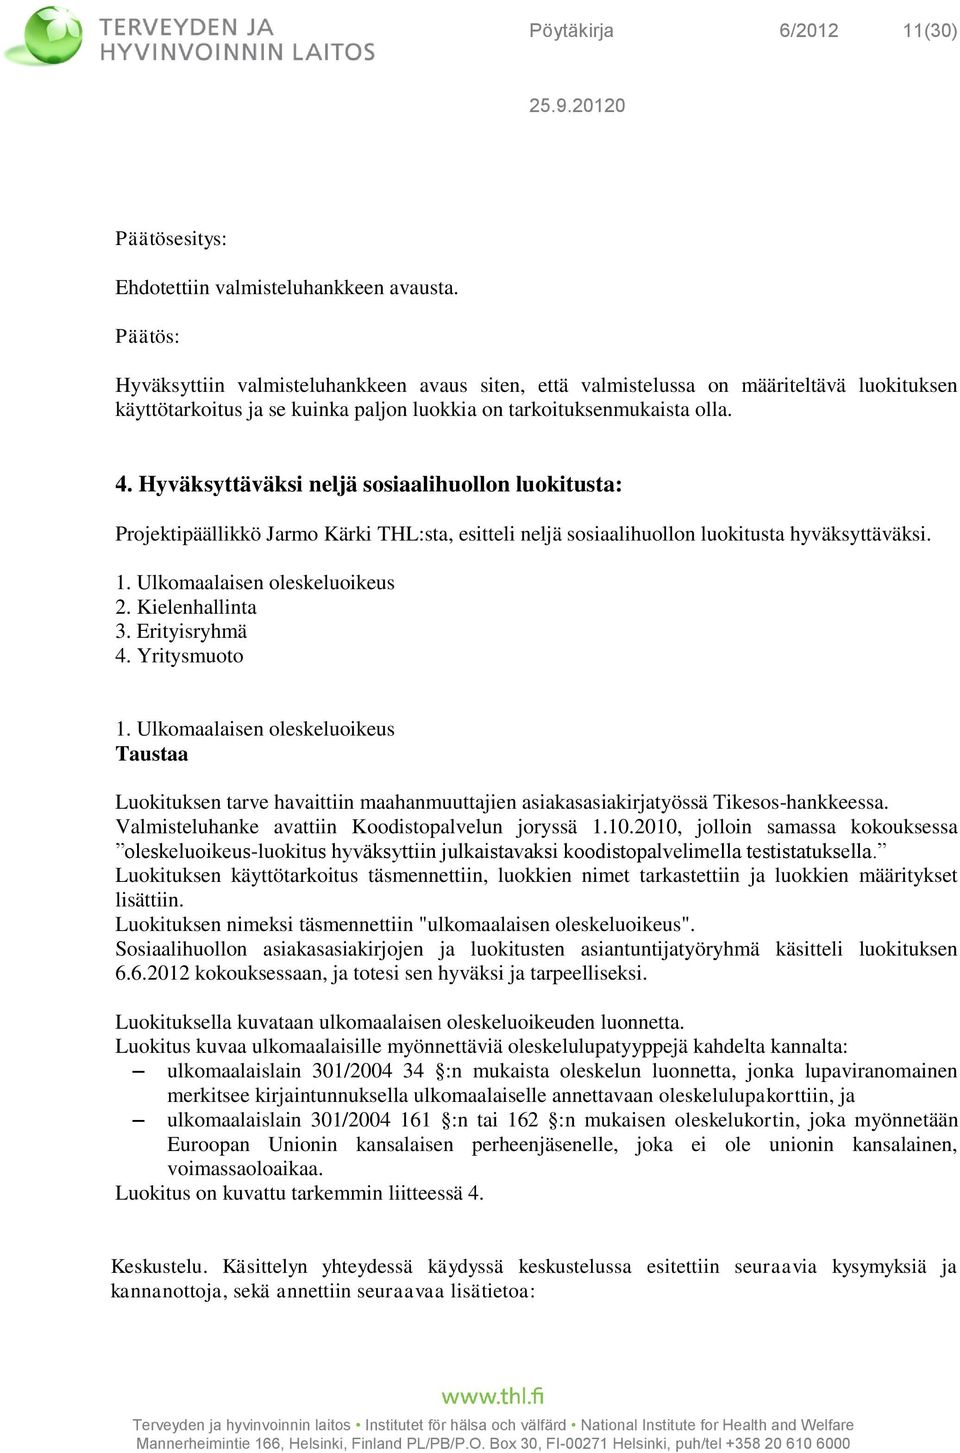 Hyväksyttäväksi neljä sosiaalihuollon luokitusta: Projektipäällikkö Jarmo Kärki THL:sta, esitteli neljä sosiaalihuollon luokitusta hyväksyttäväksi. 1. Ulkomaalaisen oleskeluoikeus 2. Kielenhallinta 3.